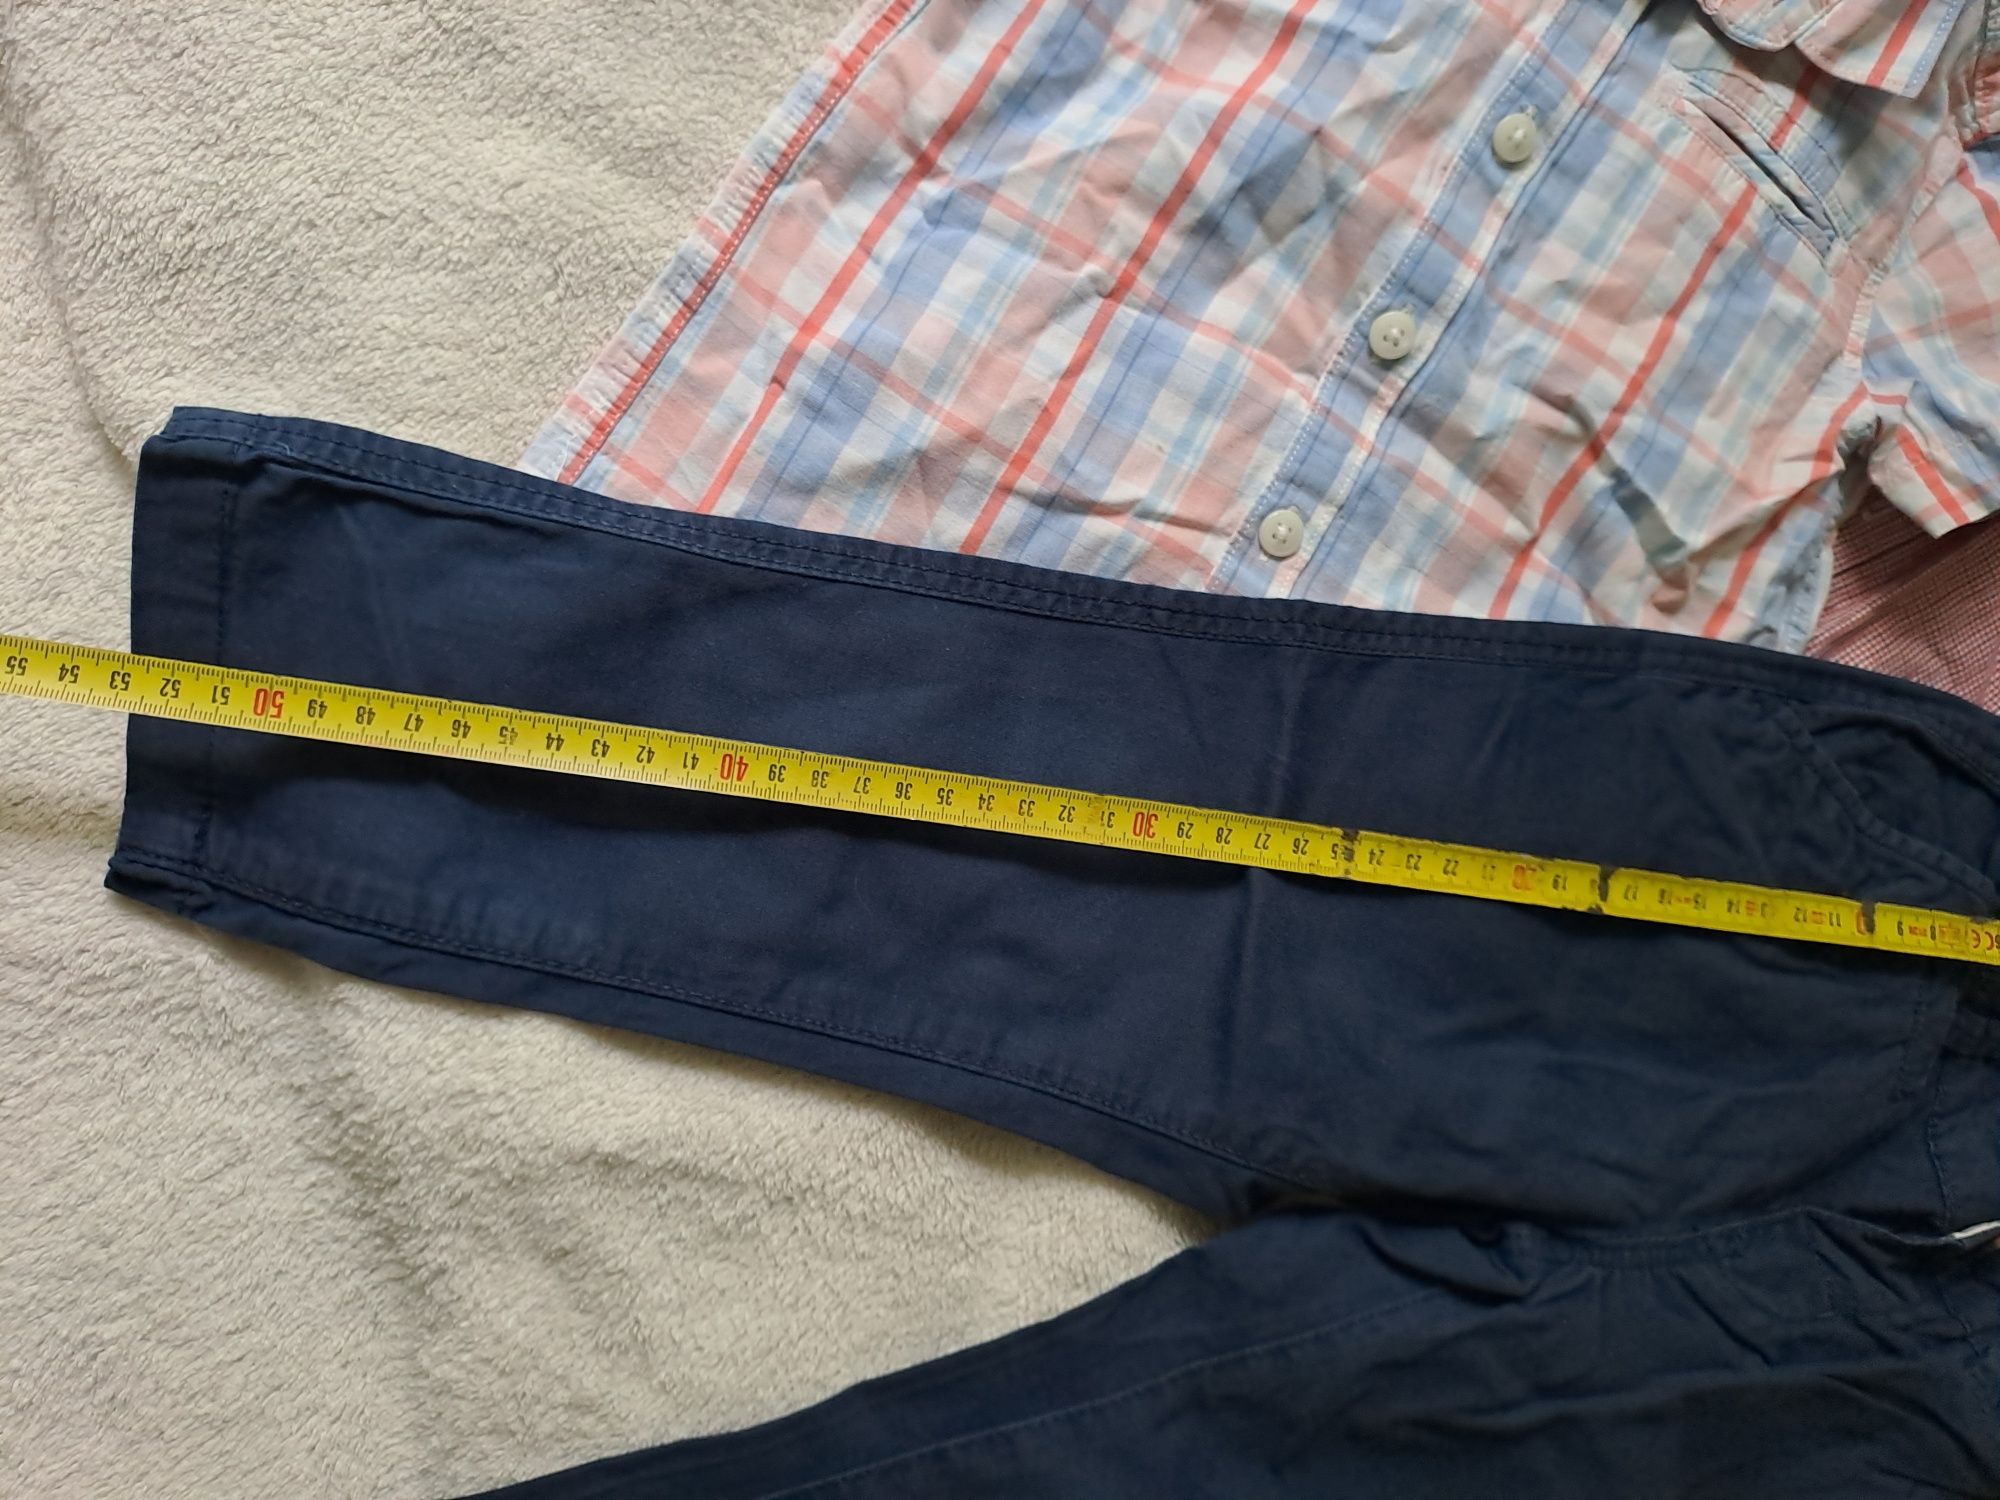 Zestaw koszula spodnie H&M Reserved 98/104